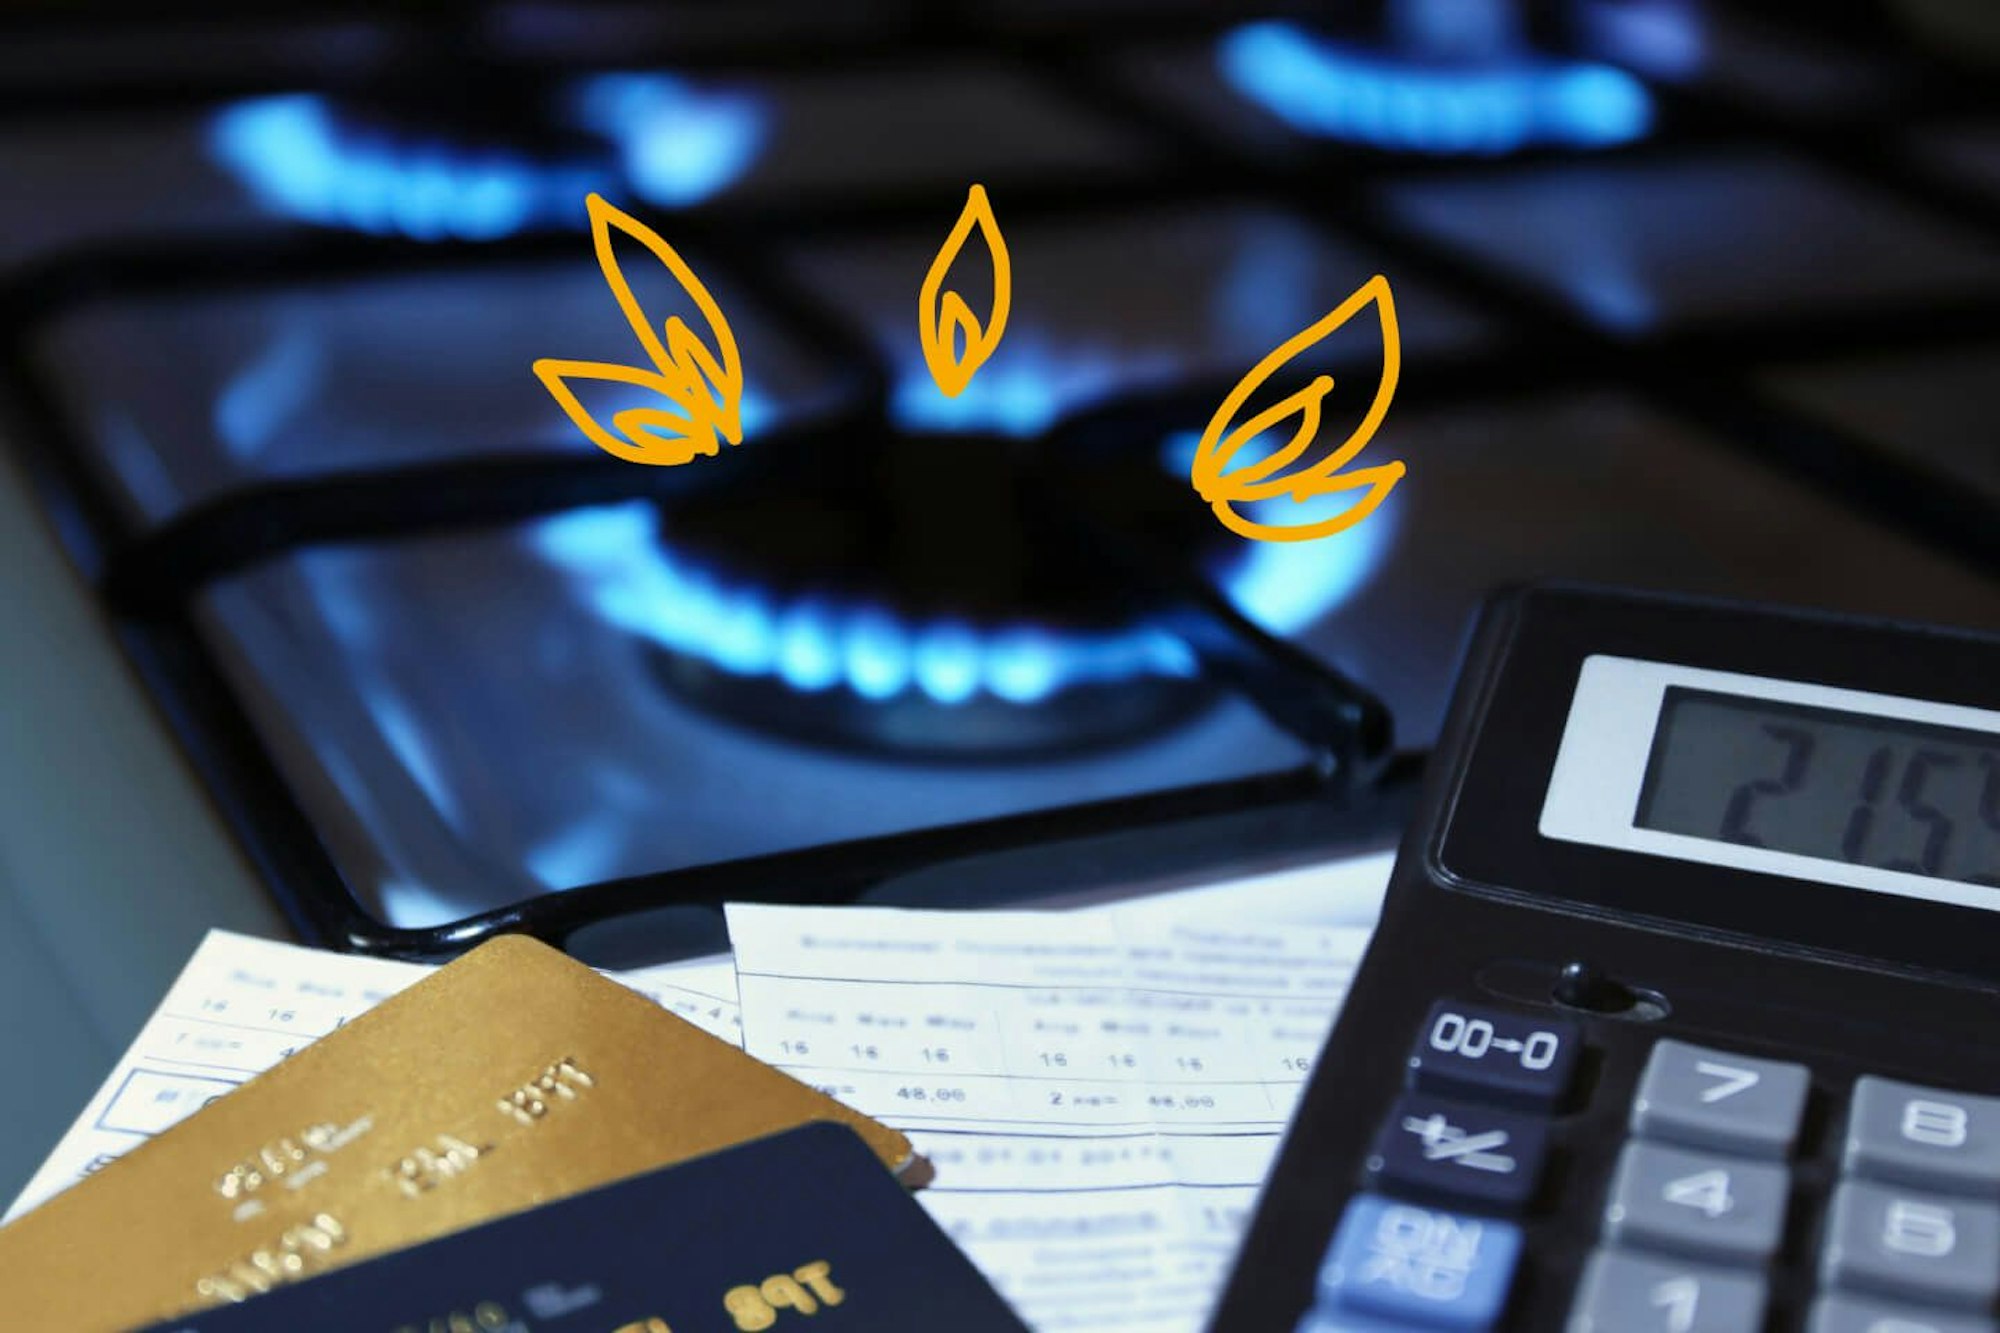 Es ist eine Gasplatte, ein Ausschnitt eines Taschenrechners und Bankkarten zu sehen, welche den hohen Gas Preisanstieg deutlich machen sollen.